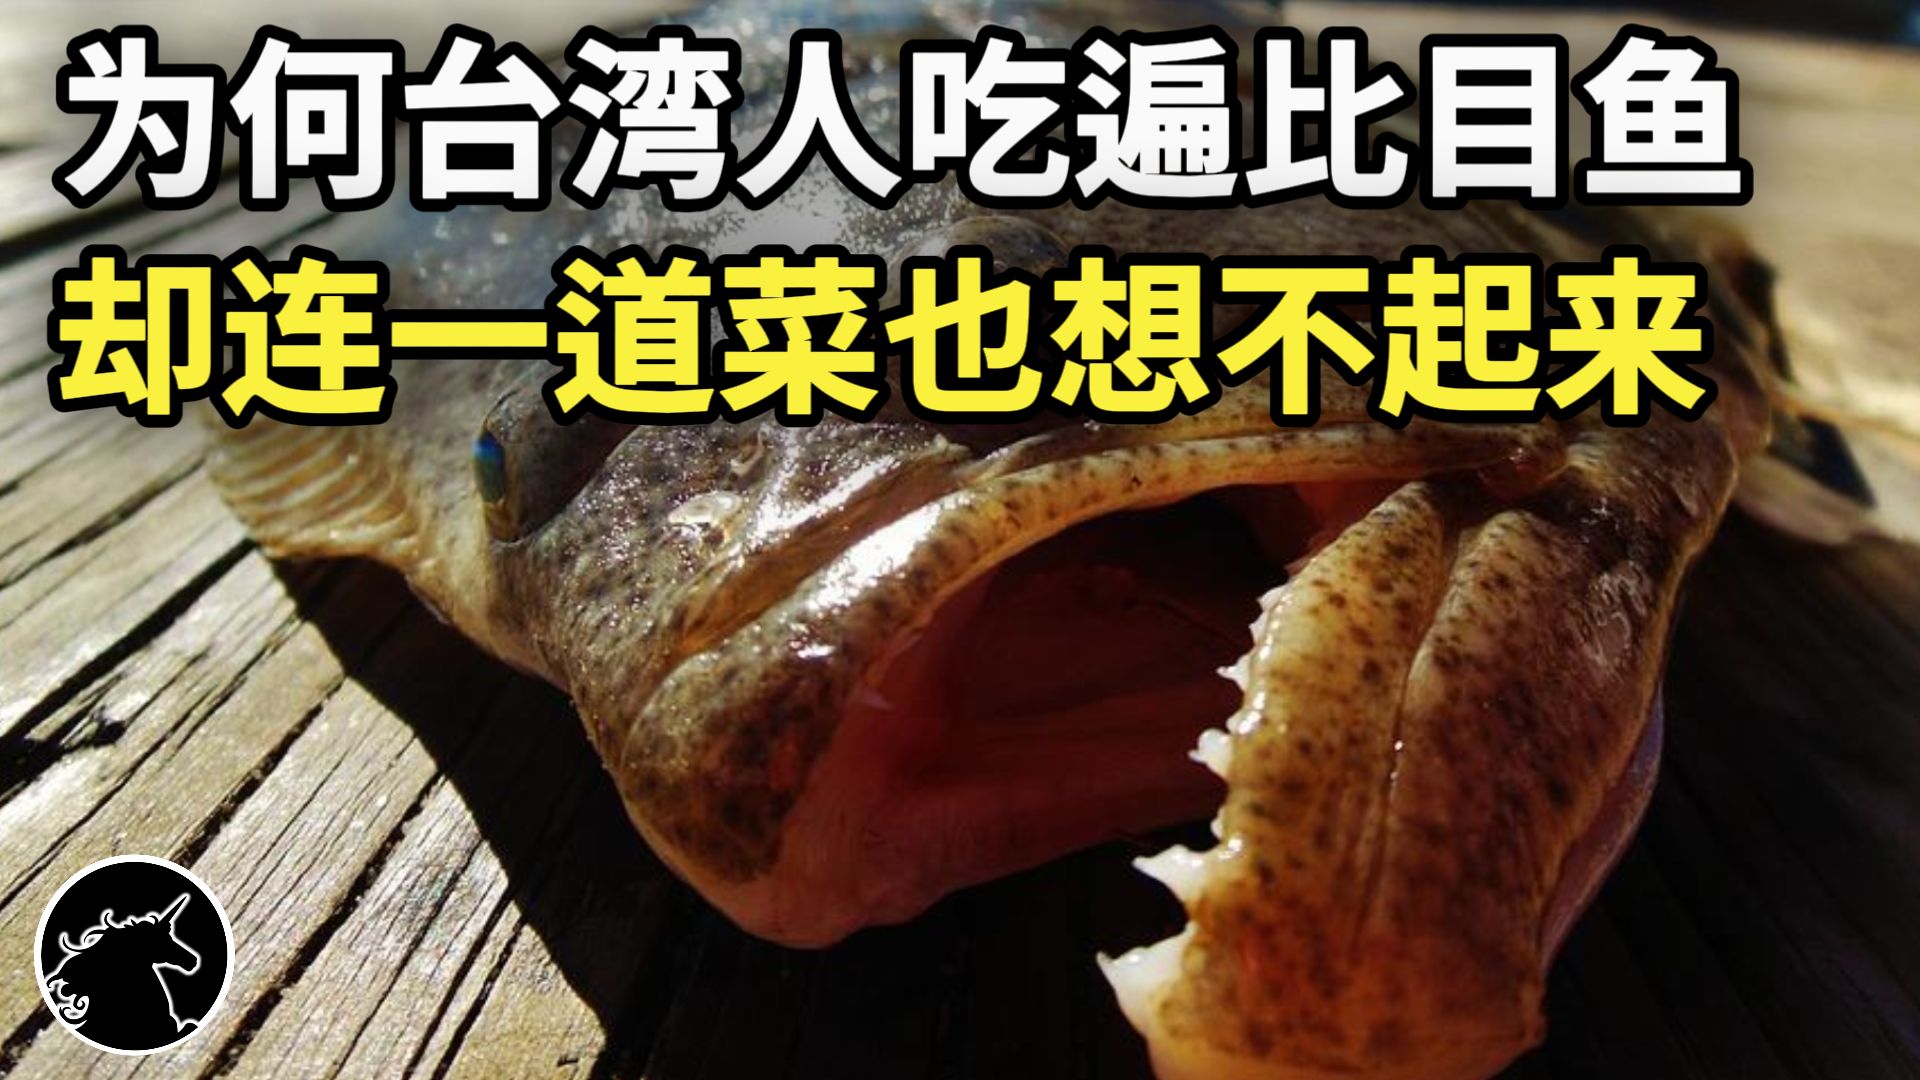 台湾人吃遍比目鱼,却连一道比目鱼菜名都回想不起?